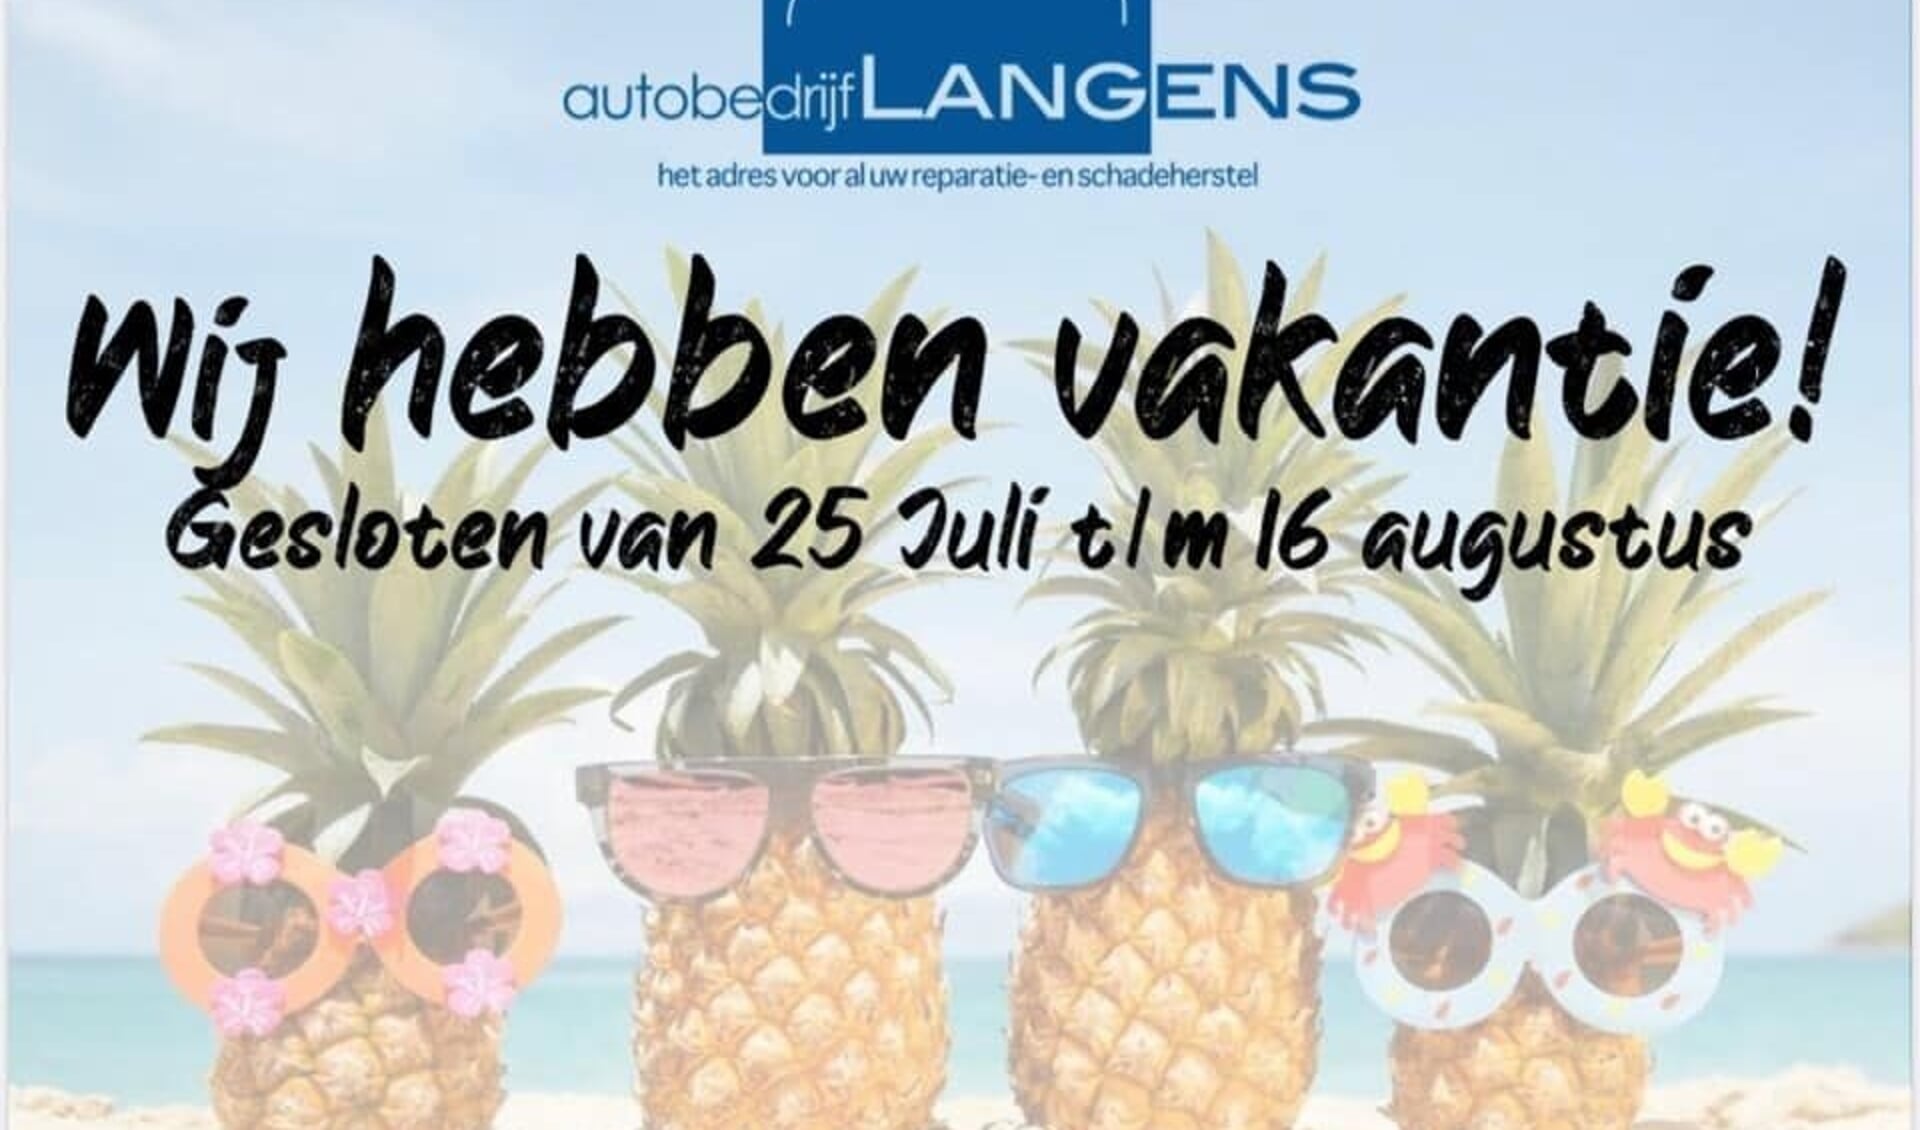 Autobedrijf Langens heeft zomervakantie